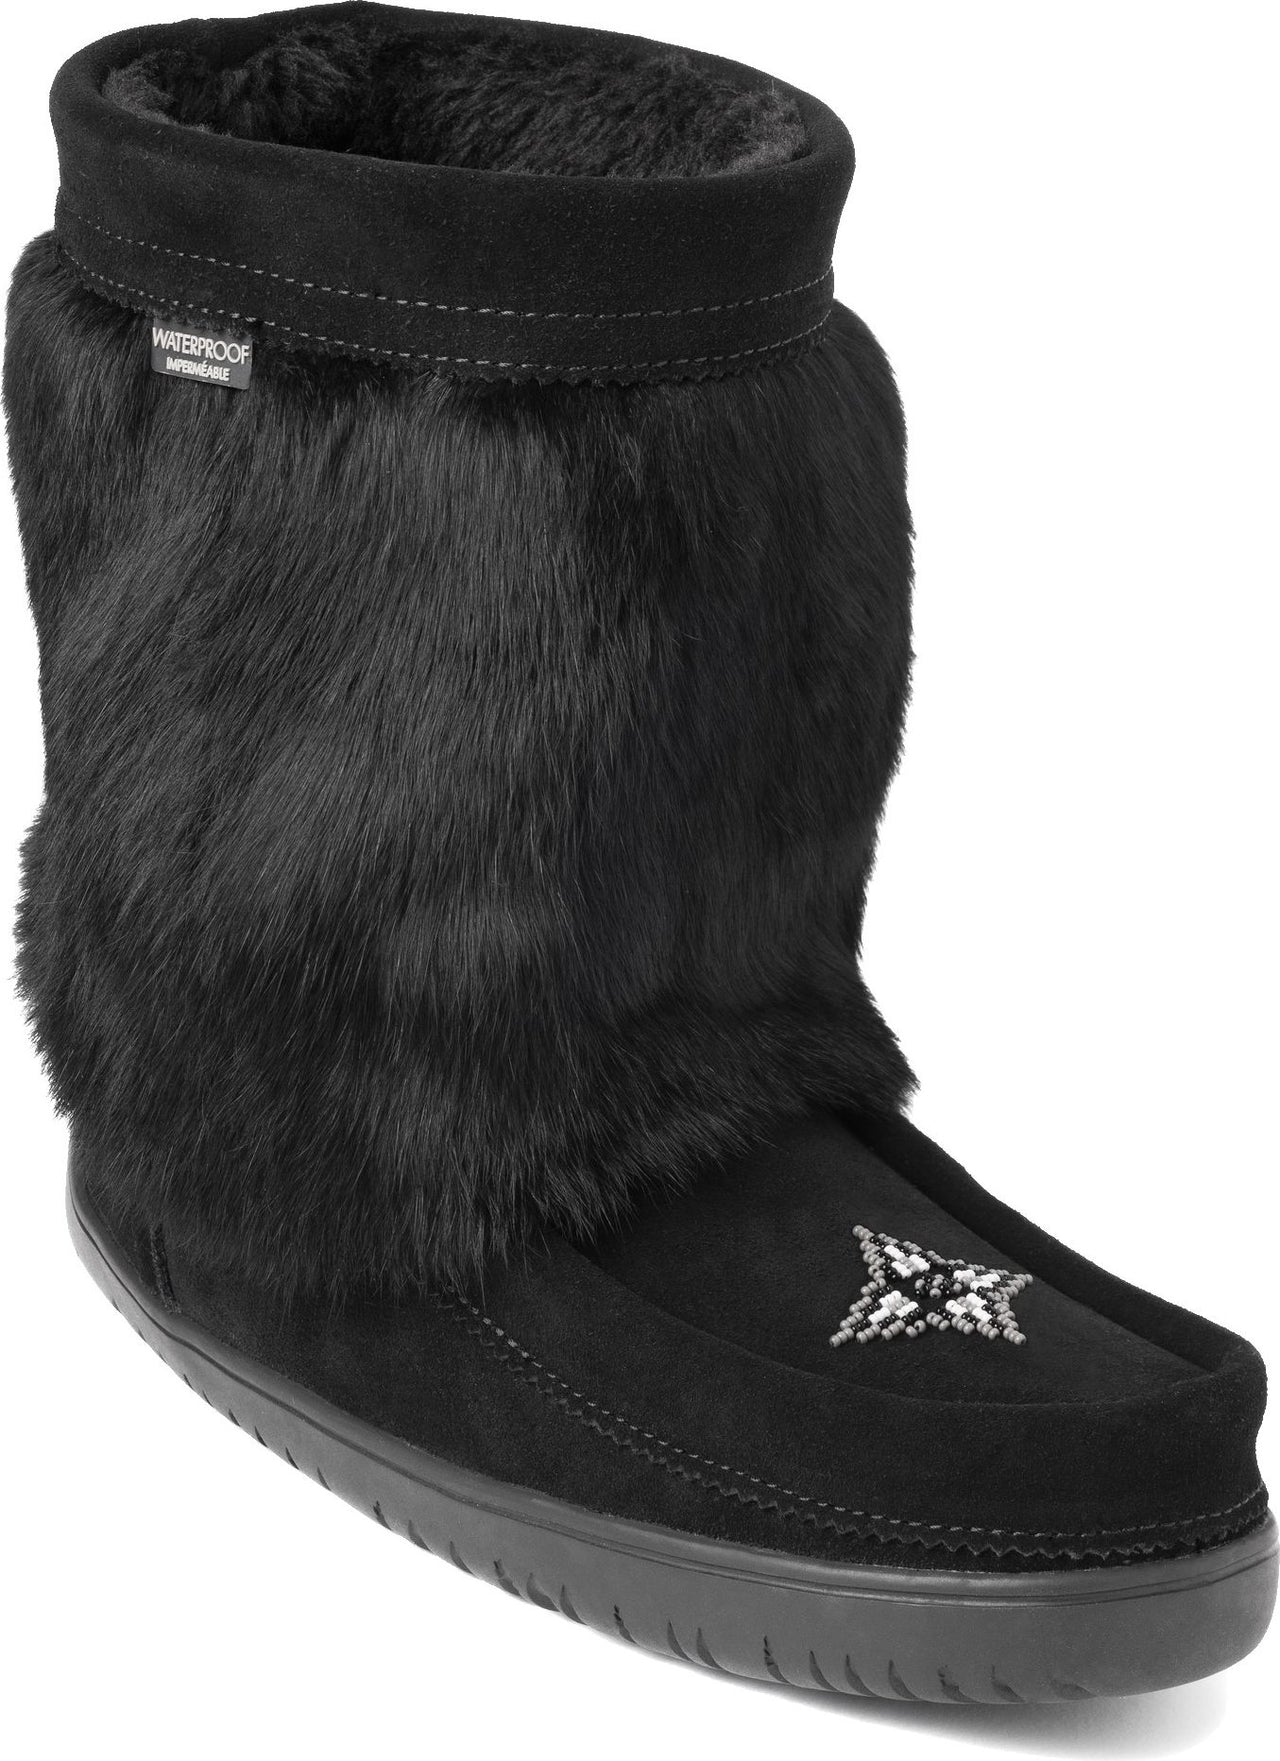 Manitobah Mukluks Boots Half Mukluk Waterproof Black